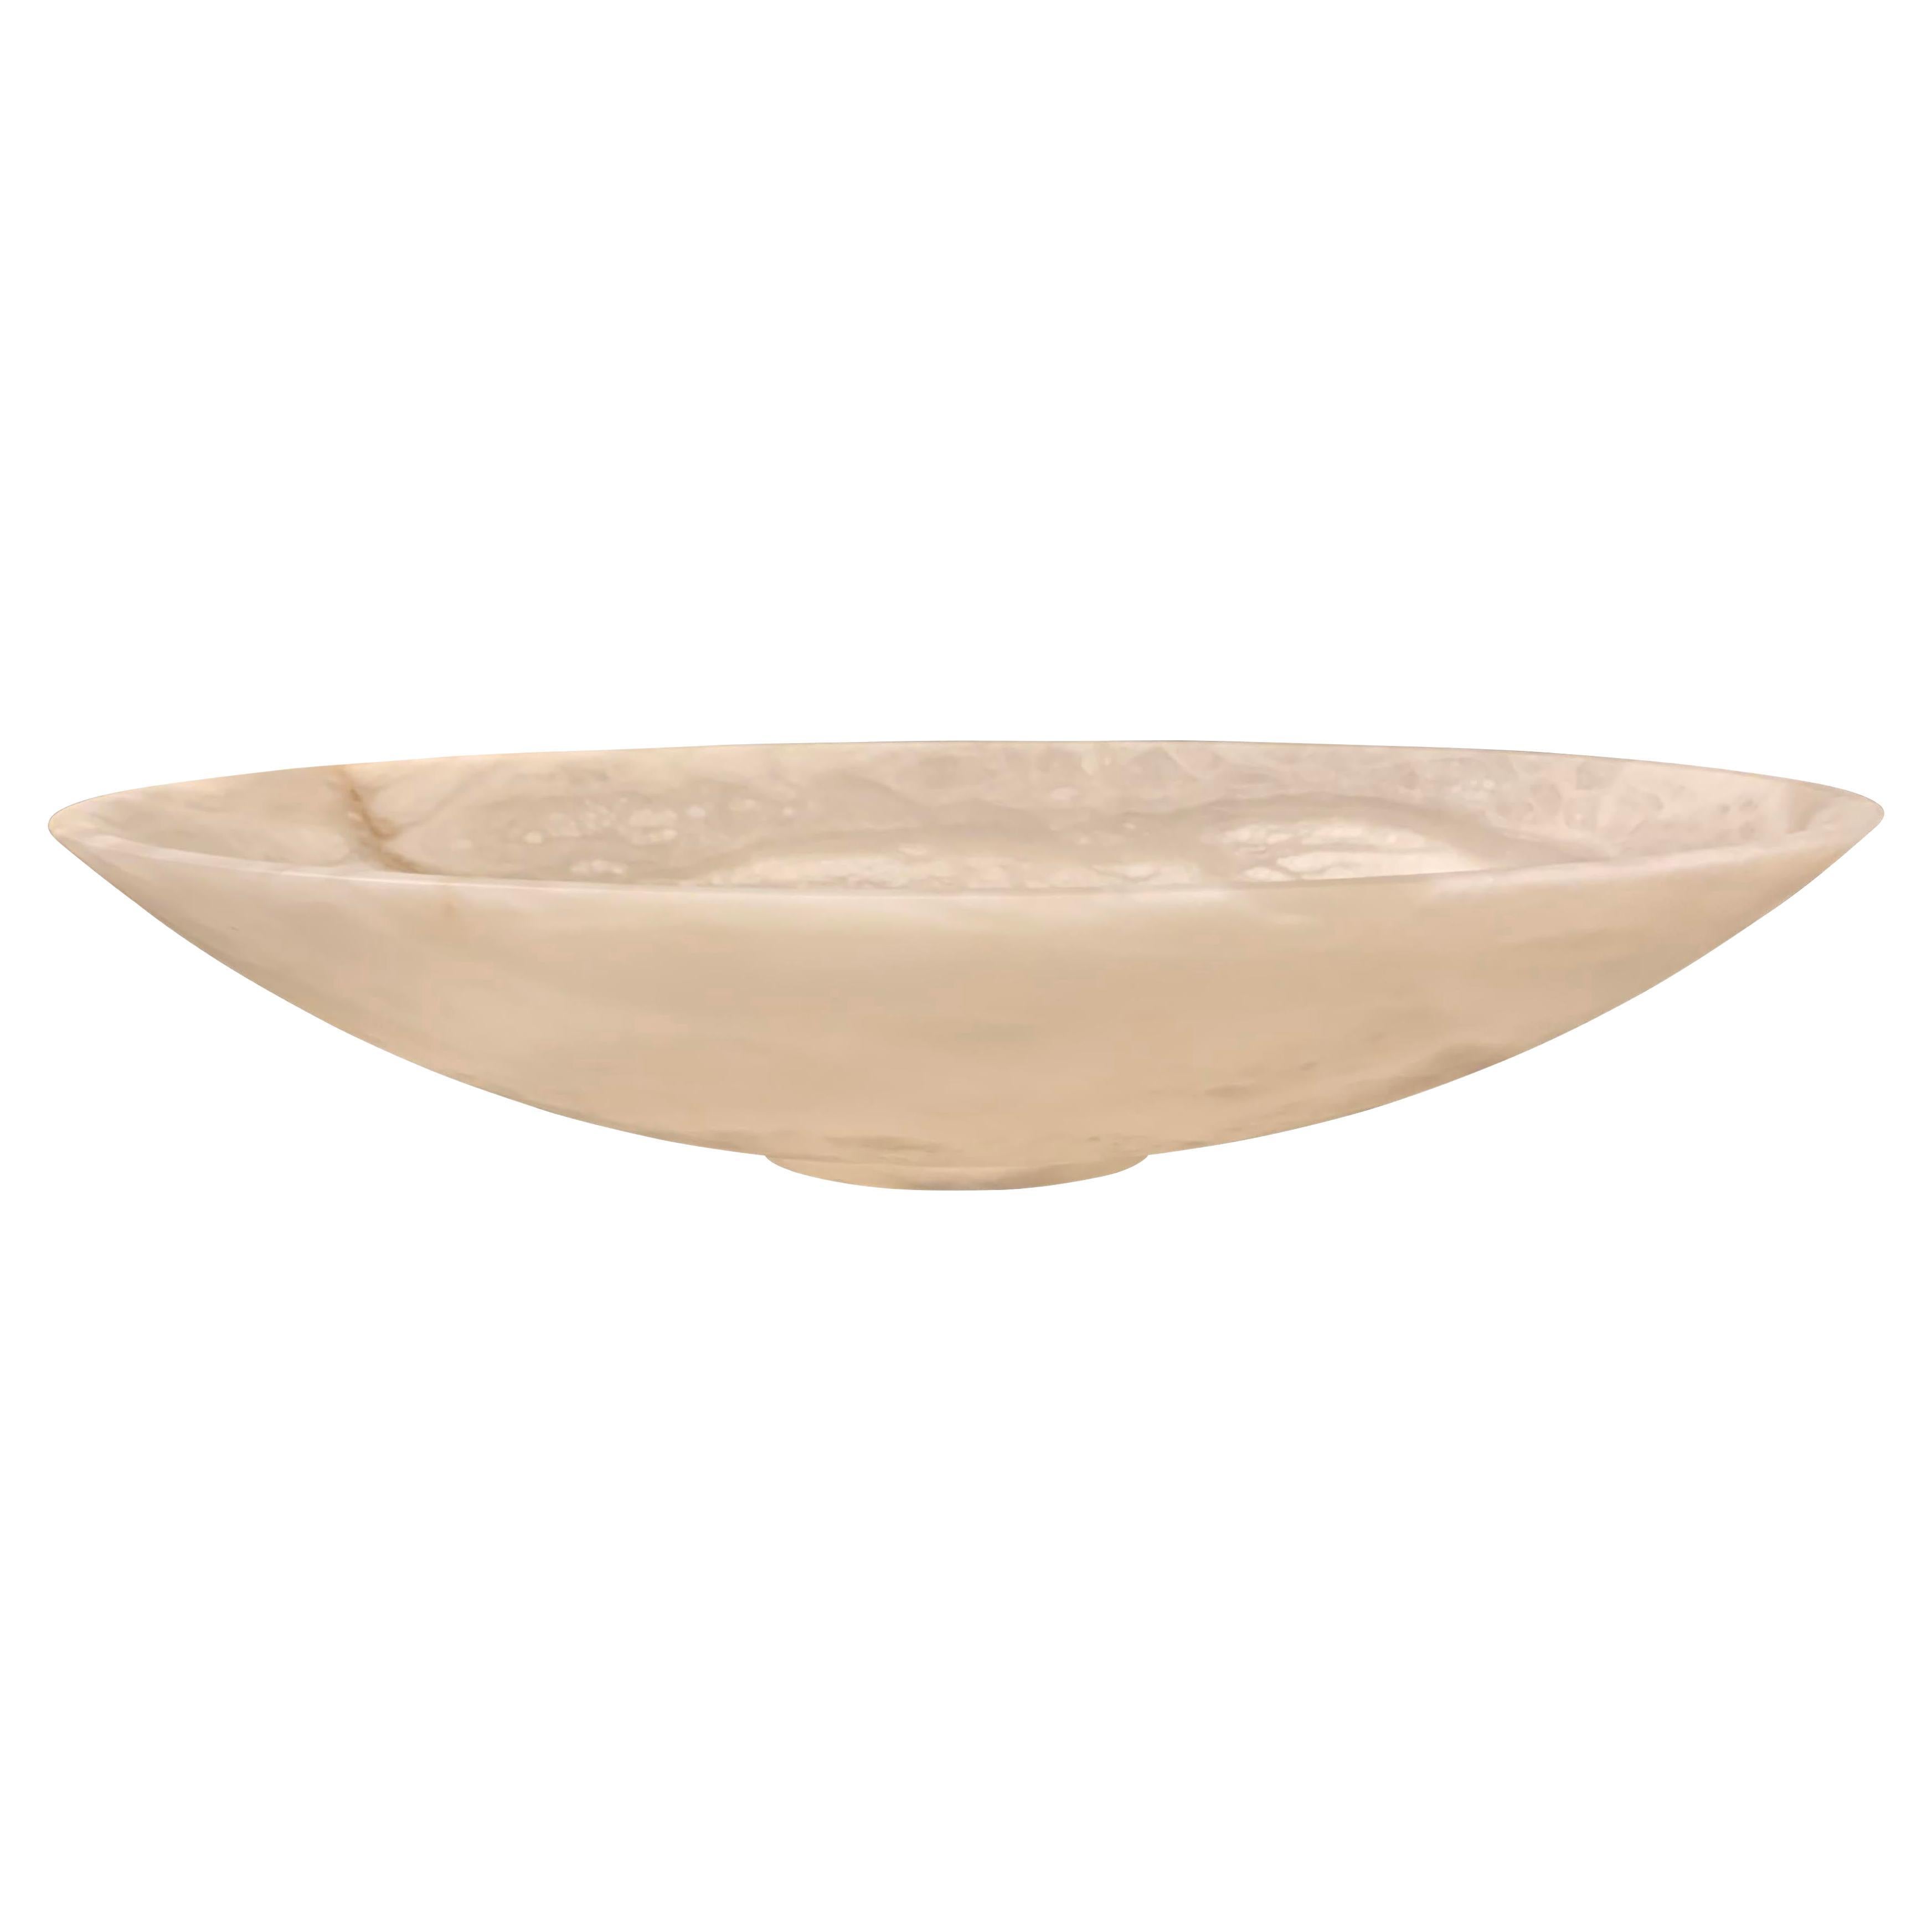 Zeitgenössische italienische Schale aus Alabaster in großer ovaler Form.
Geschliffene Oberfläche.
Teil einer Sammlung von italienischen Alabasterschalen.